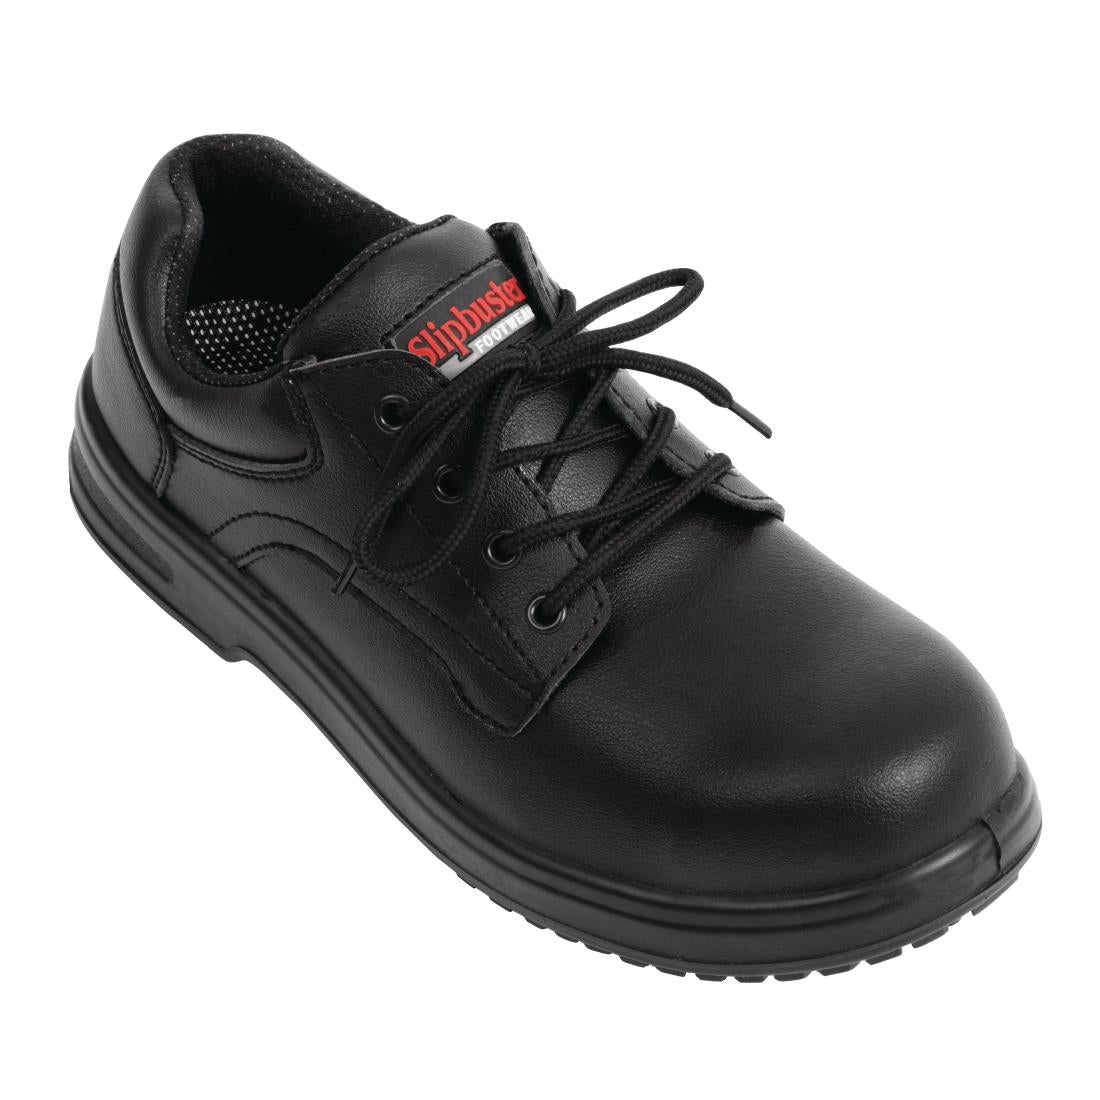 BB498-42 Slipbuster Basic Shoes Slip Resistant Black 42 JD Catering Equipment Solutions Ltd